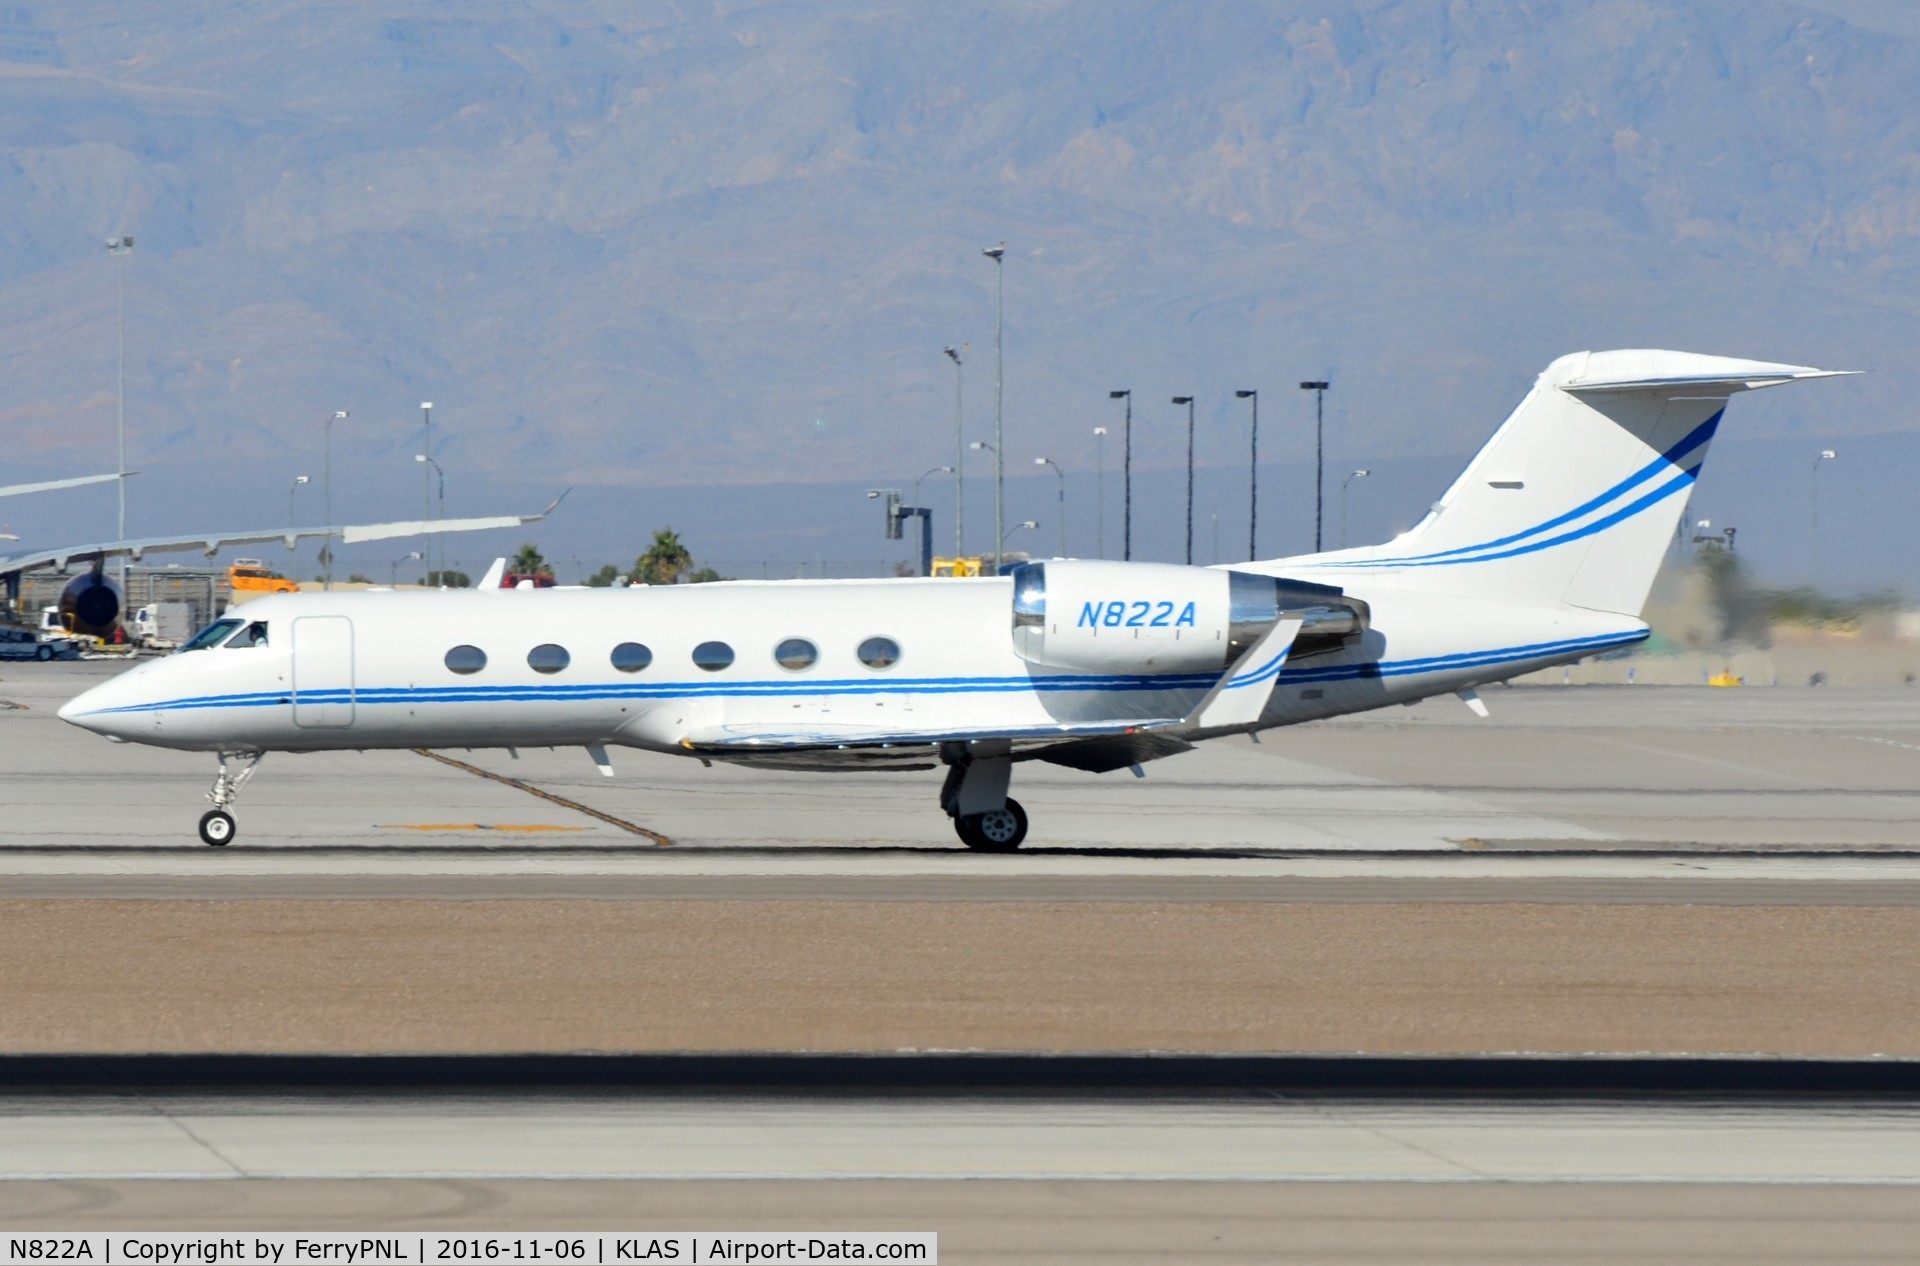 N822A, 2001 Gulfstream Aerospace G-IV C/N 1447, Flug G4 departing LAS